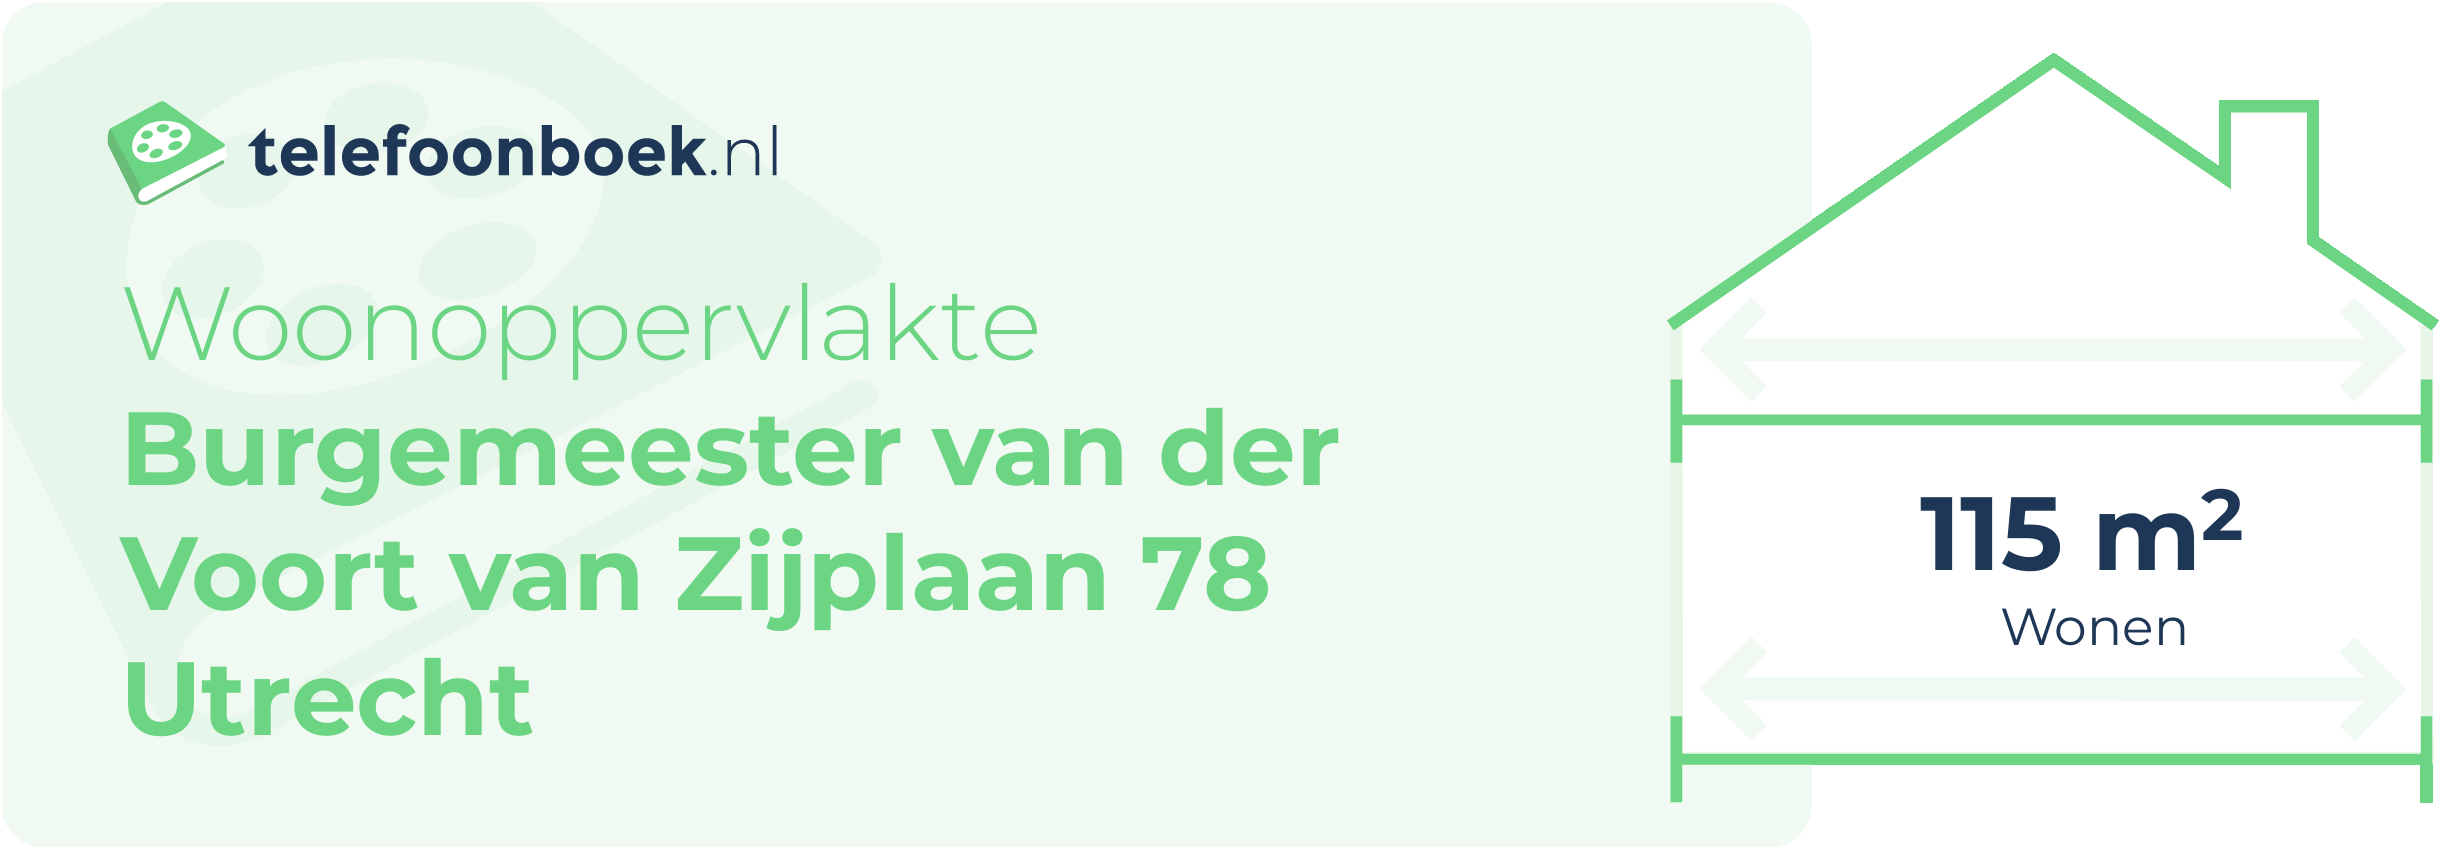 Woonoppervlakte Burgemeester Van Der Voort Van Zijplaan 78 Utrecht